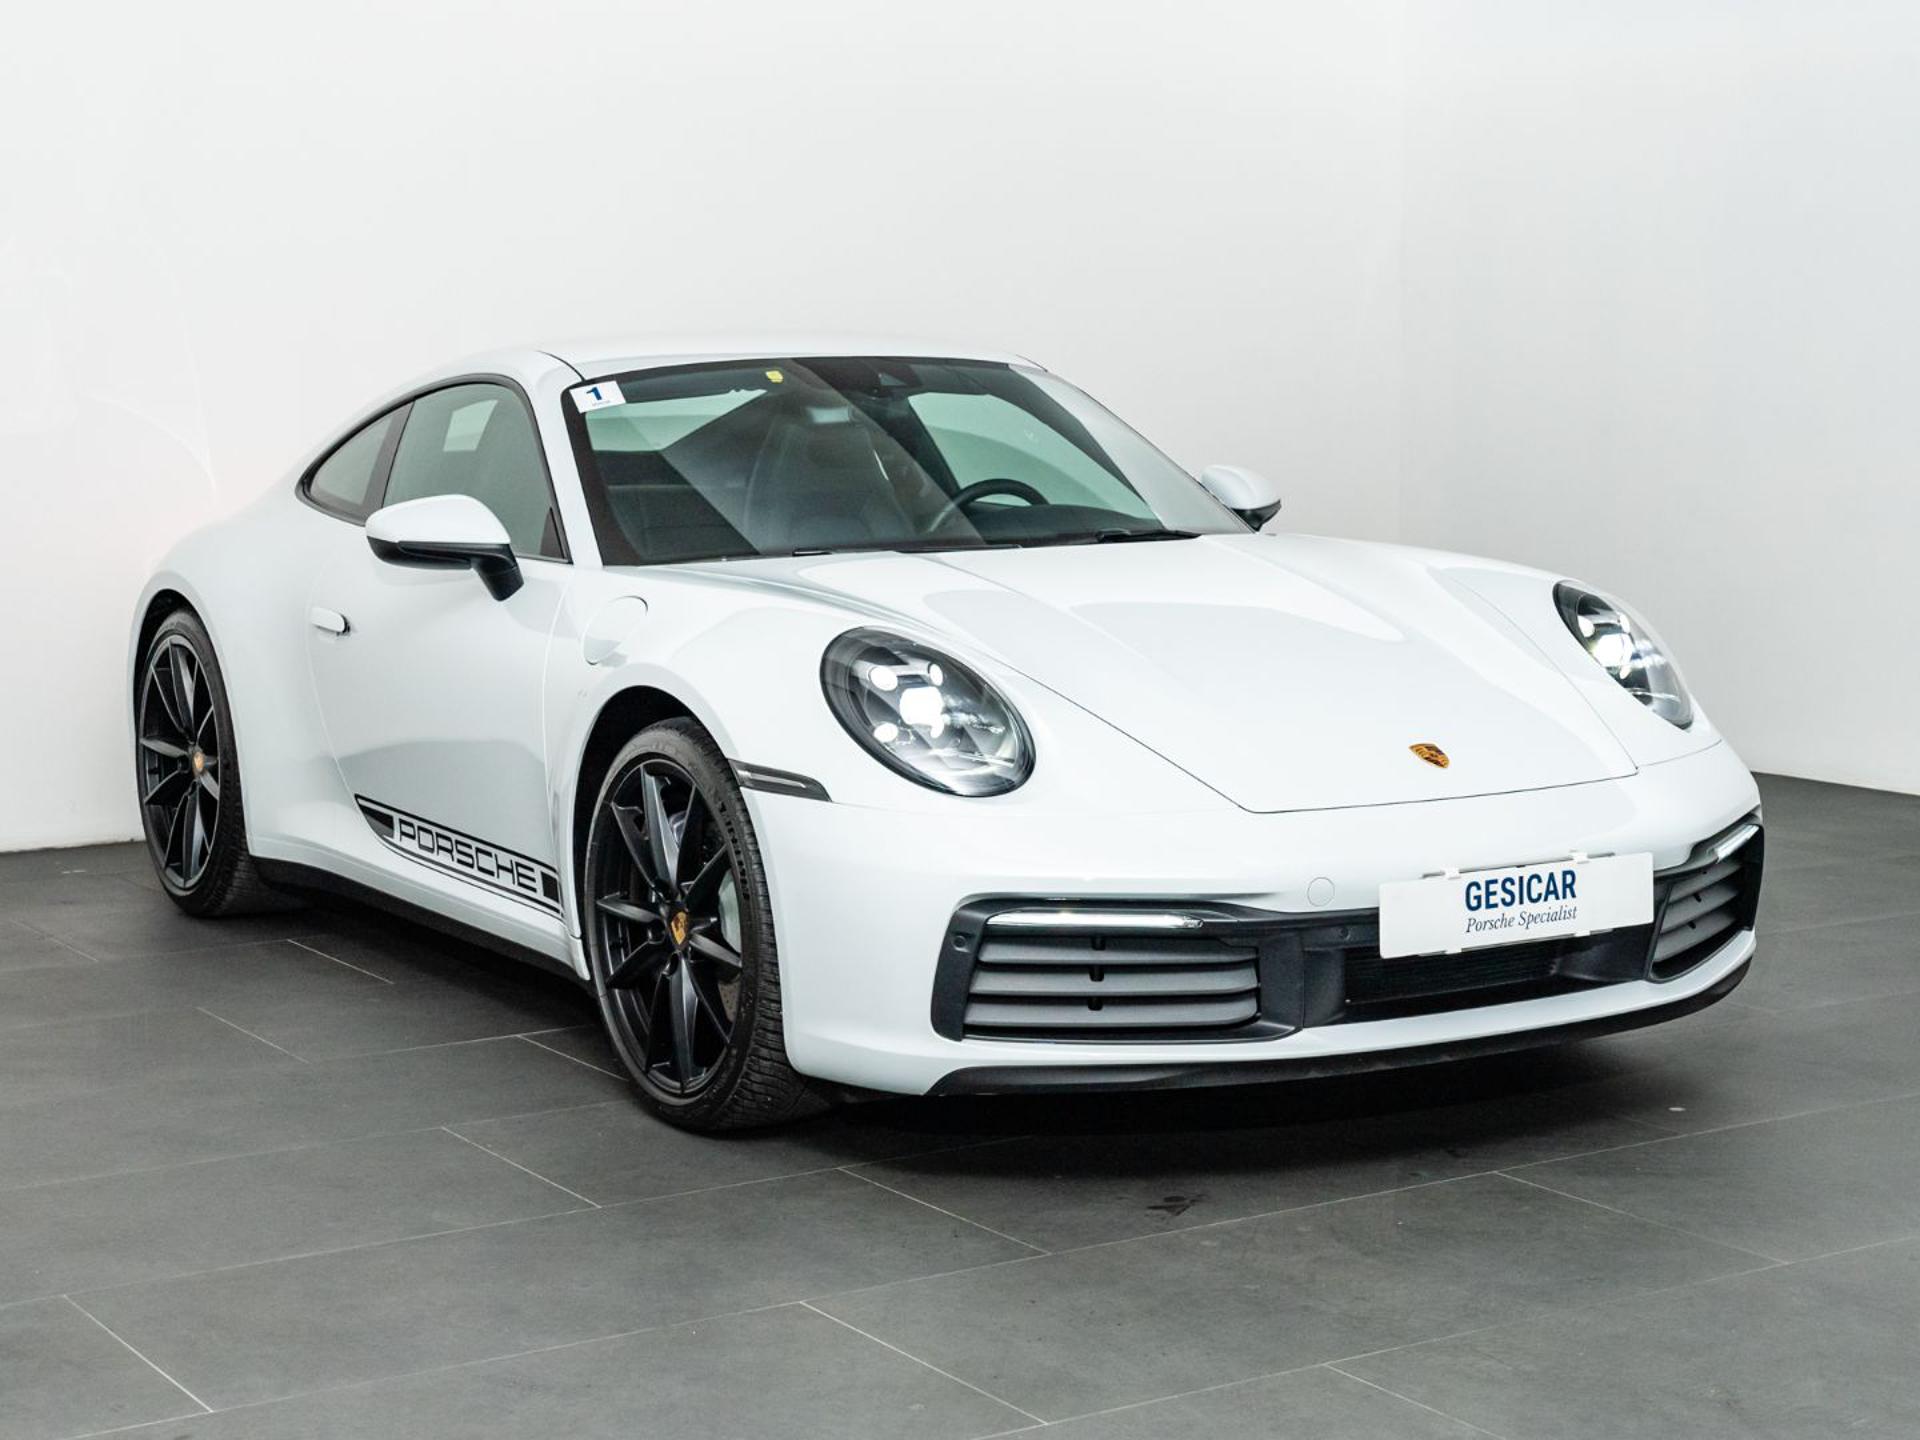 Gesicar, acquista o vendi la tua Porsche nuova o usata a Livorno.